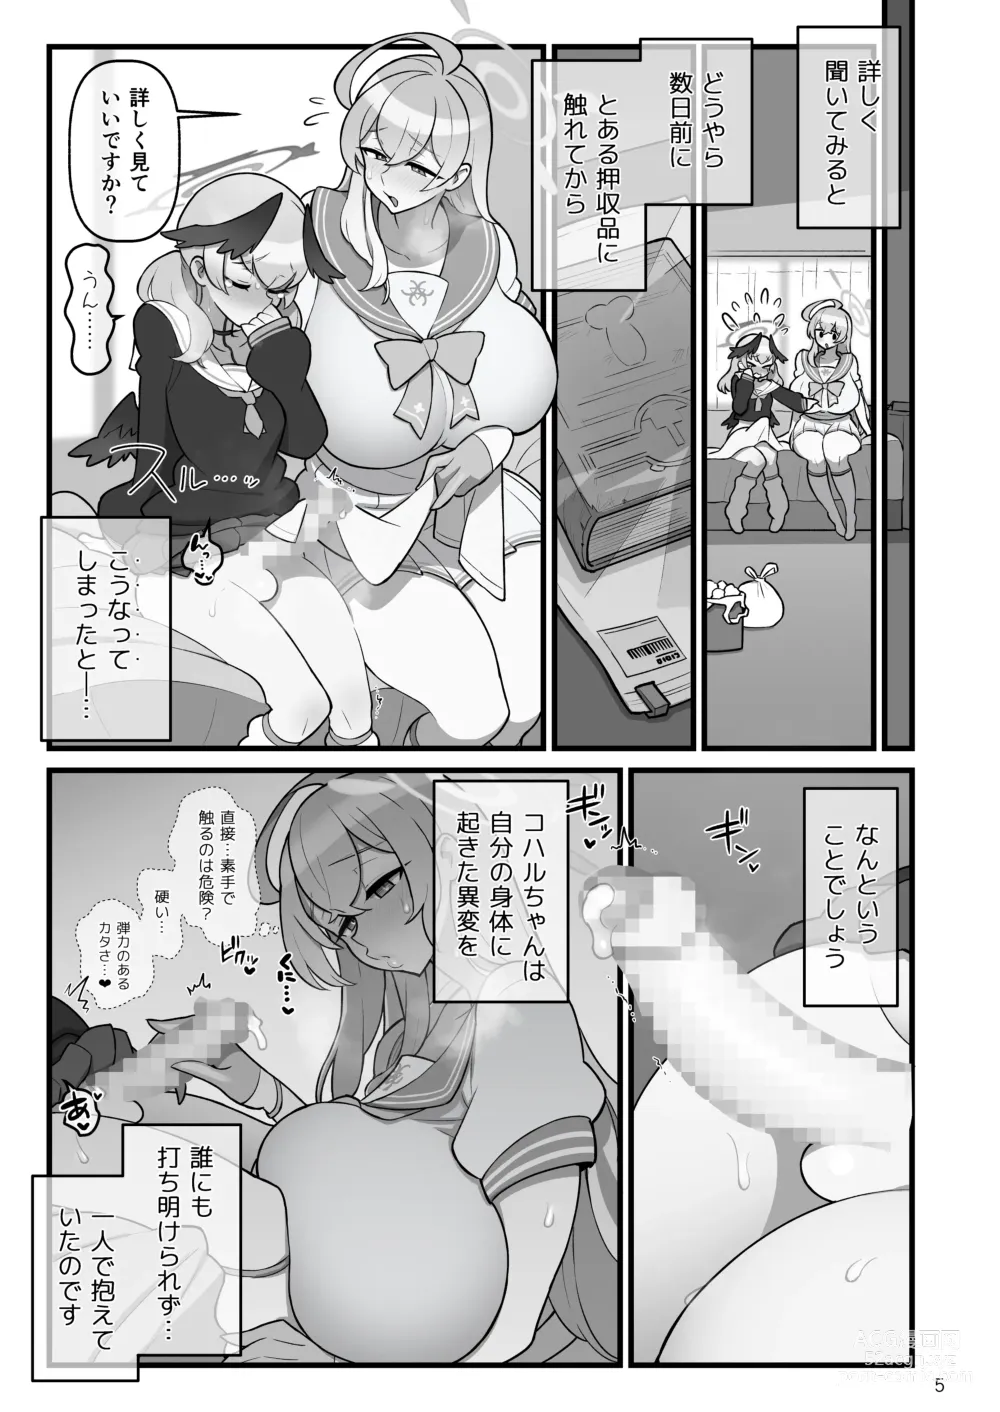 Page 6 of doujinshi Koharufutanaru